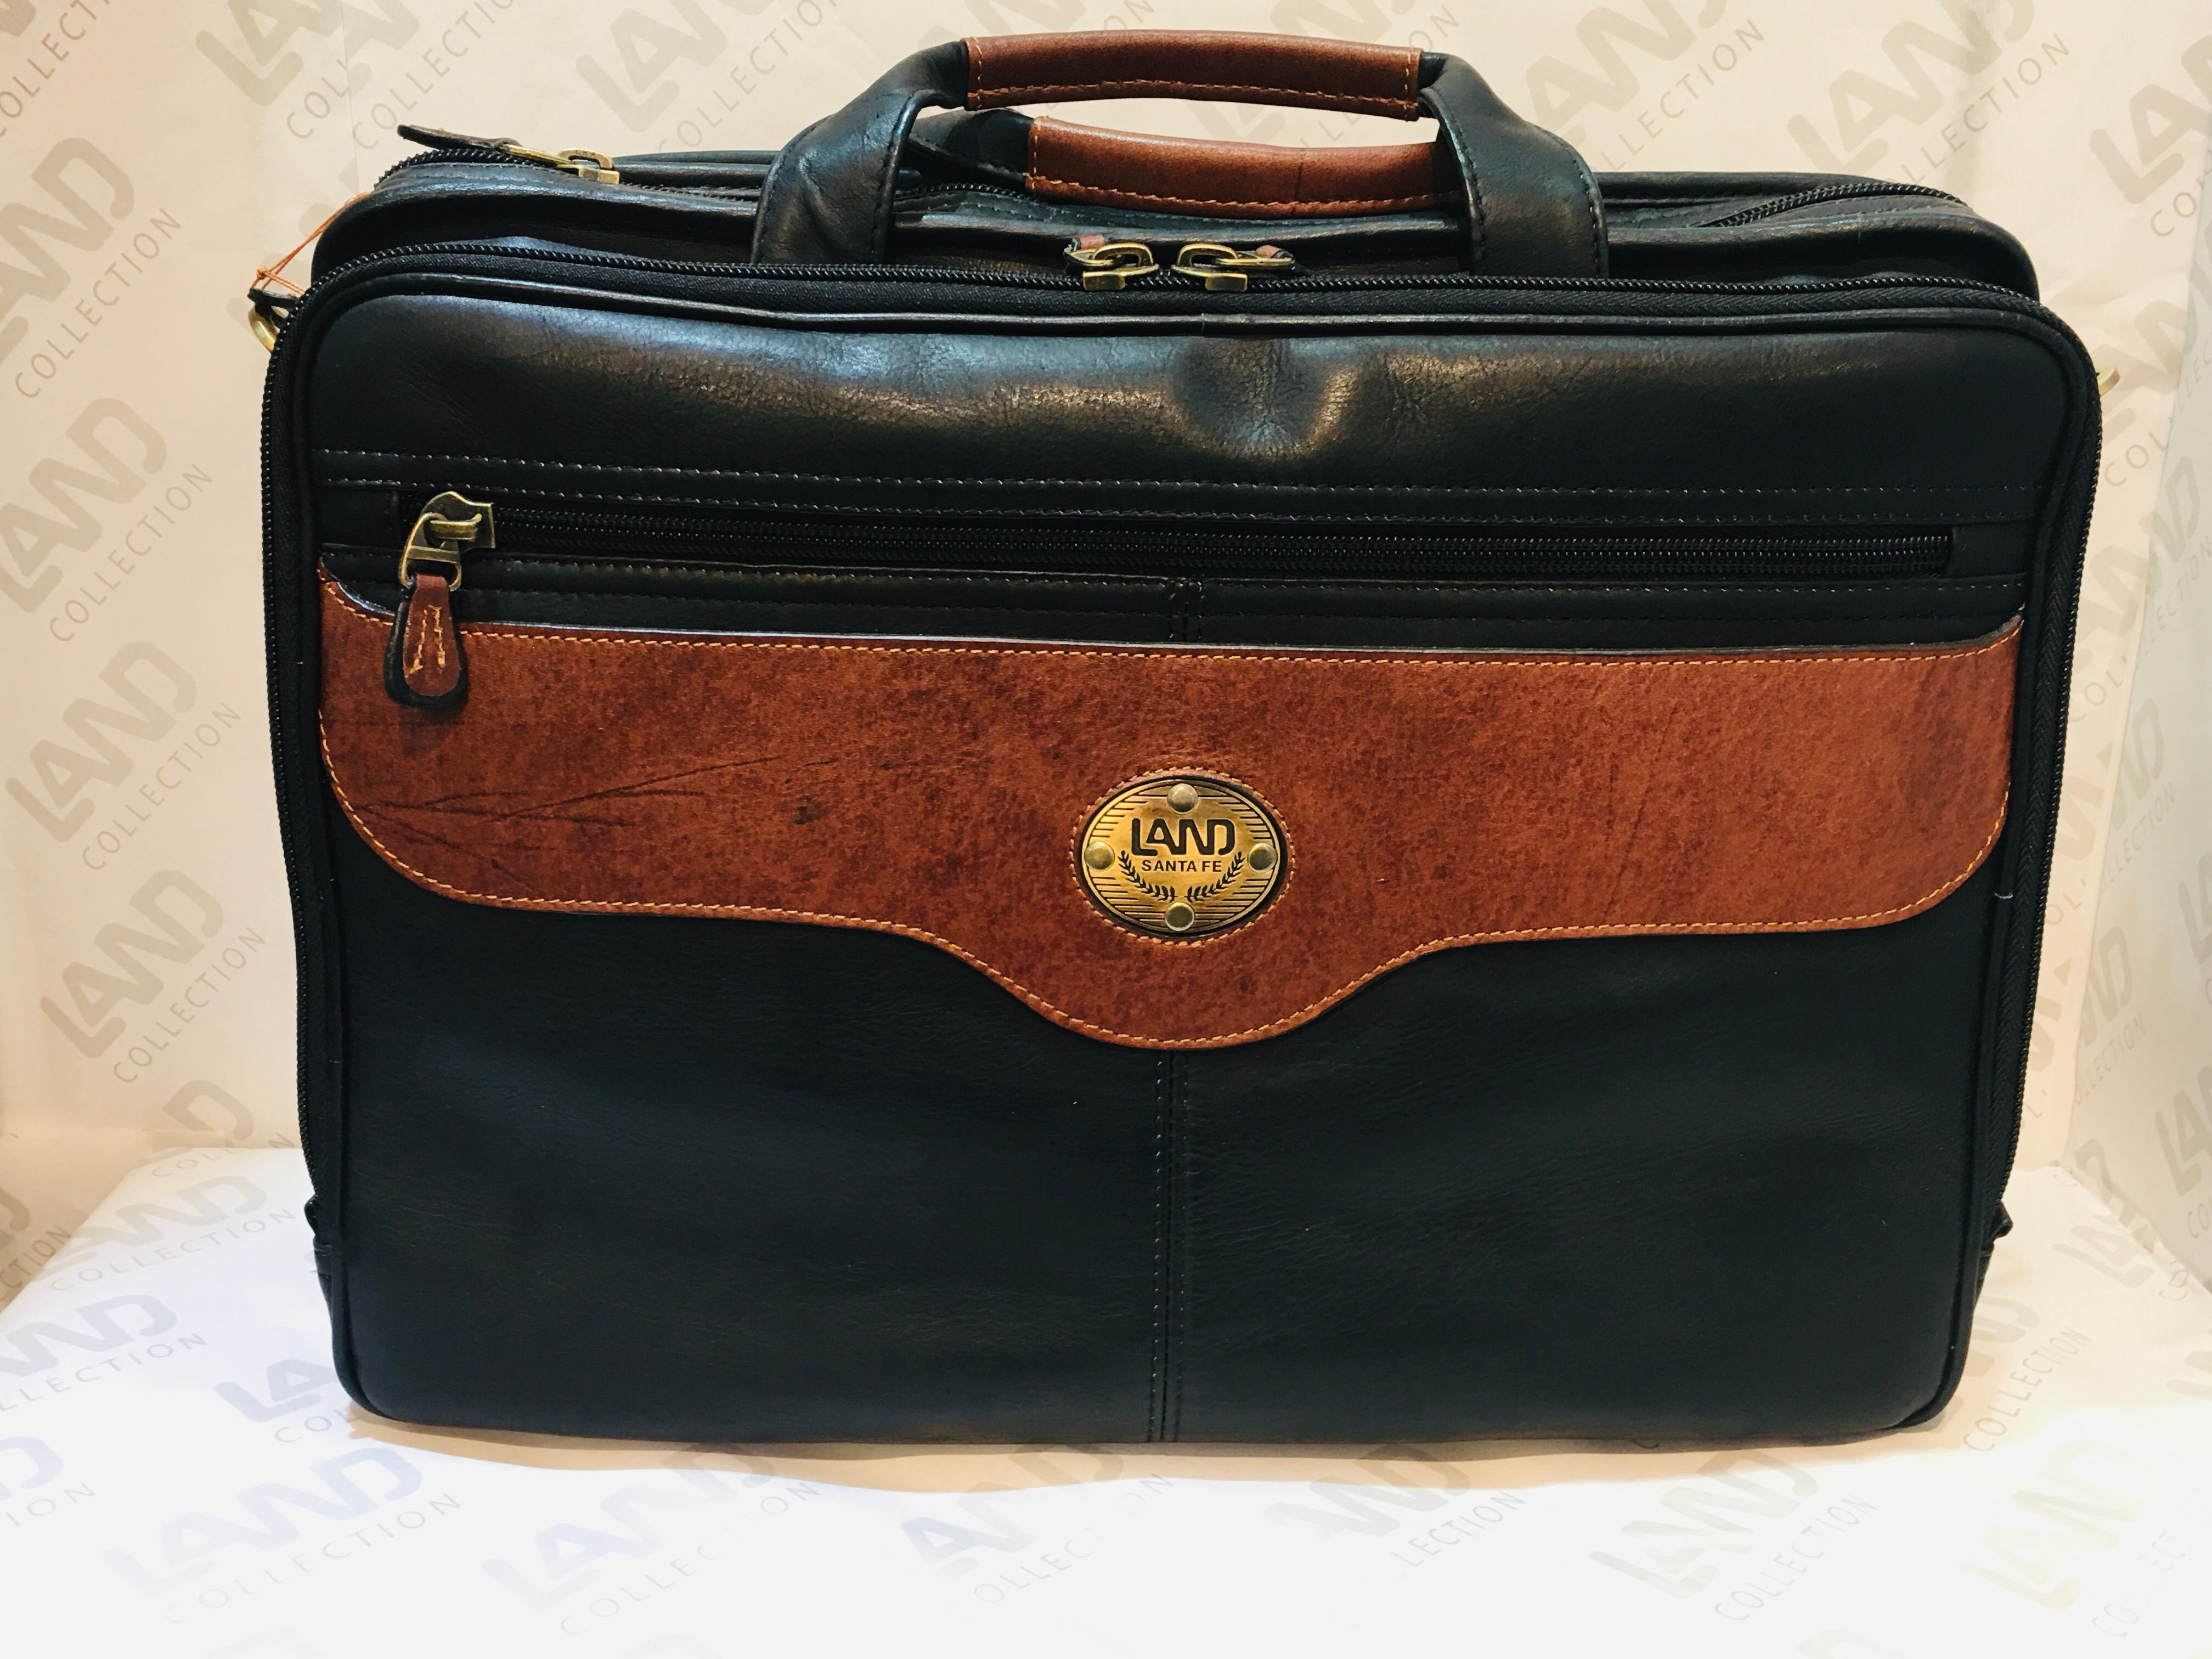 Santa Fe Collection: Traveler's Brief Bag